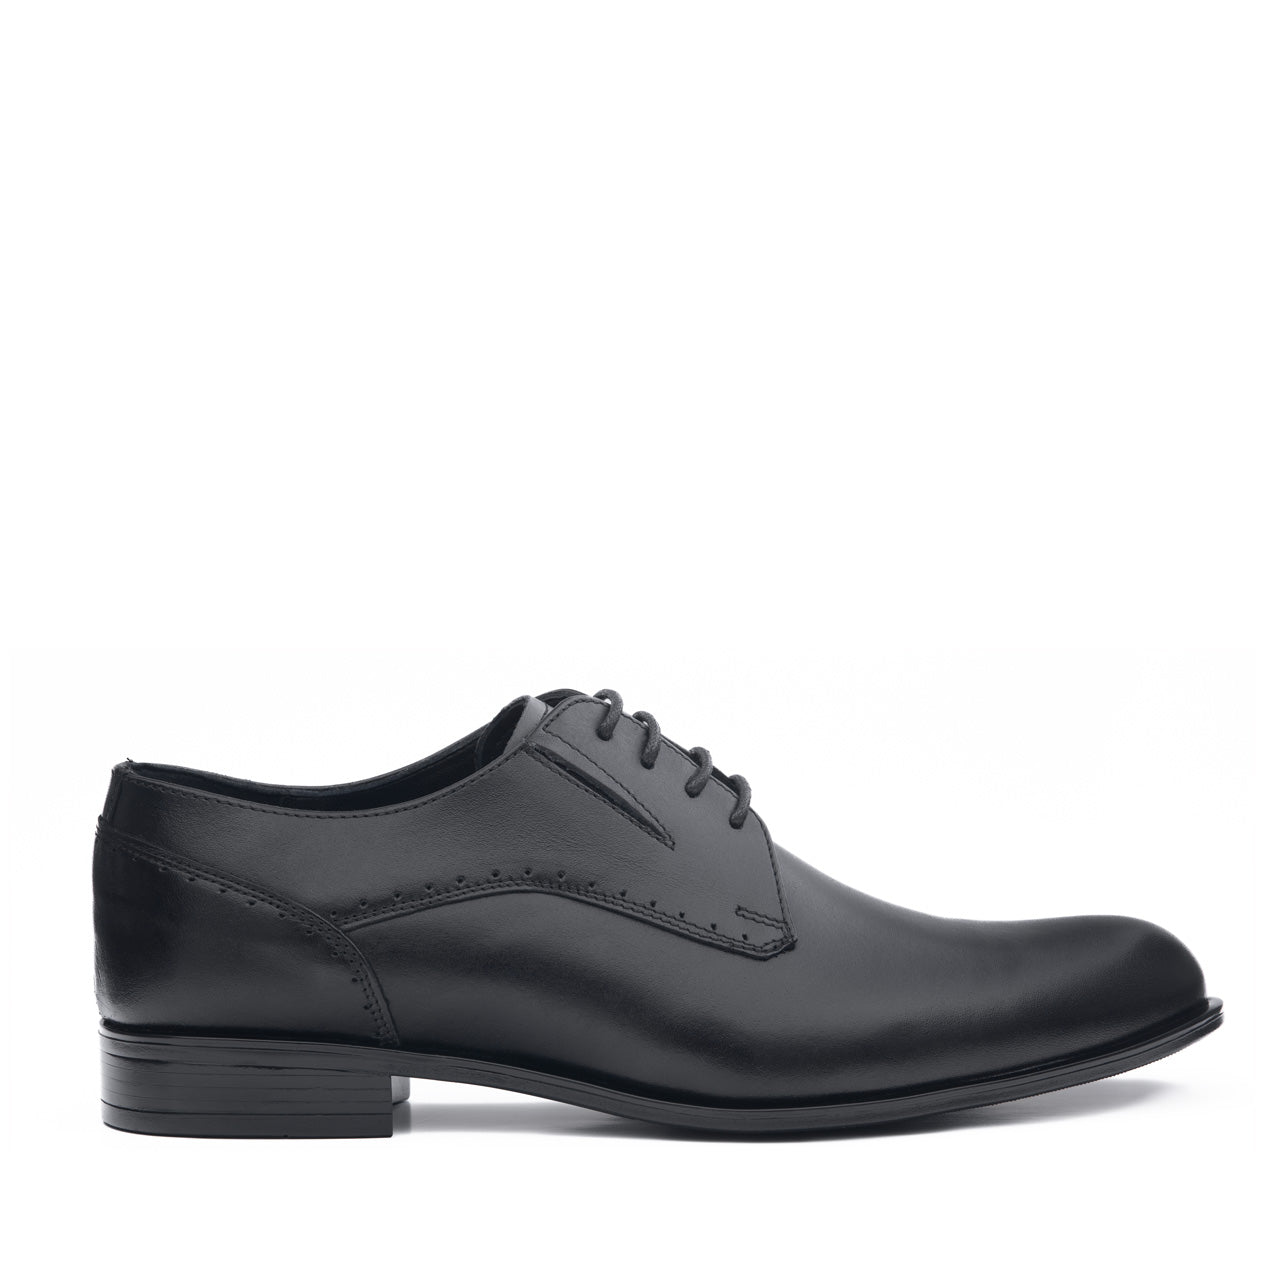 Pantofi eleganti barbati Formal negru